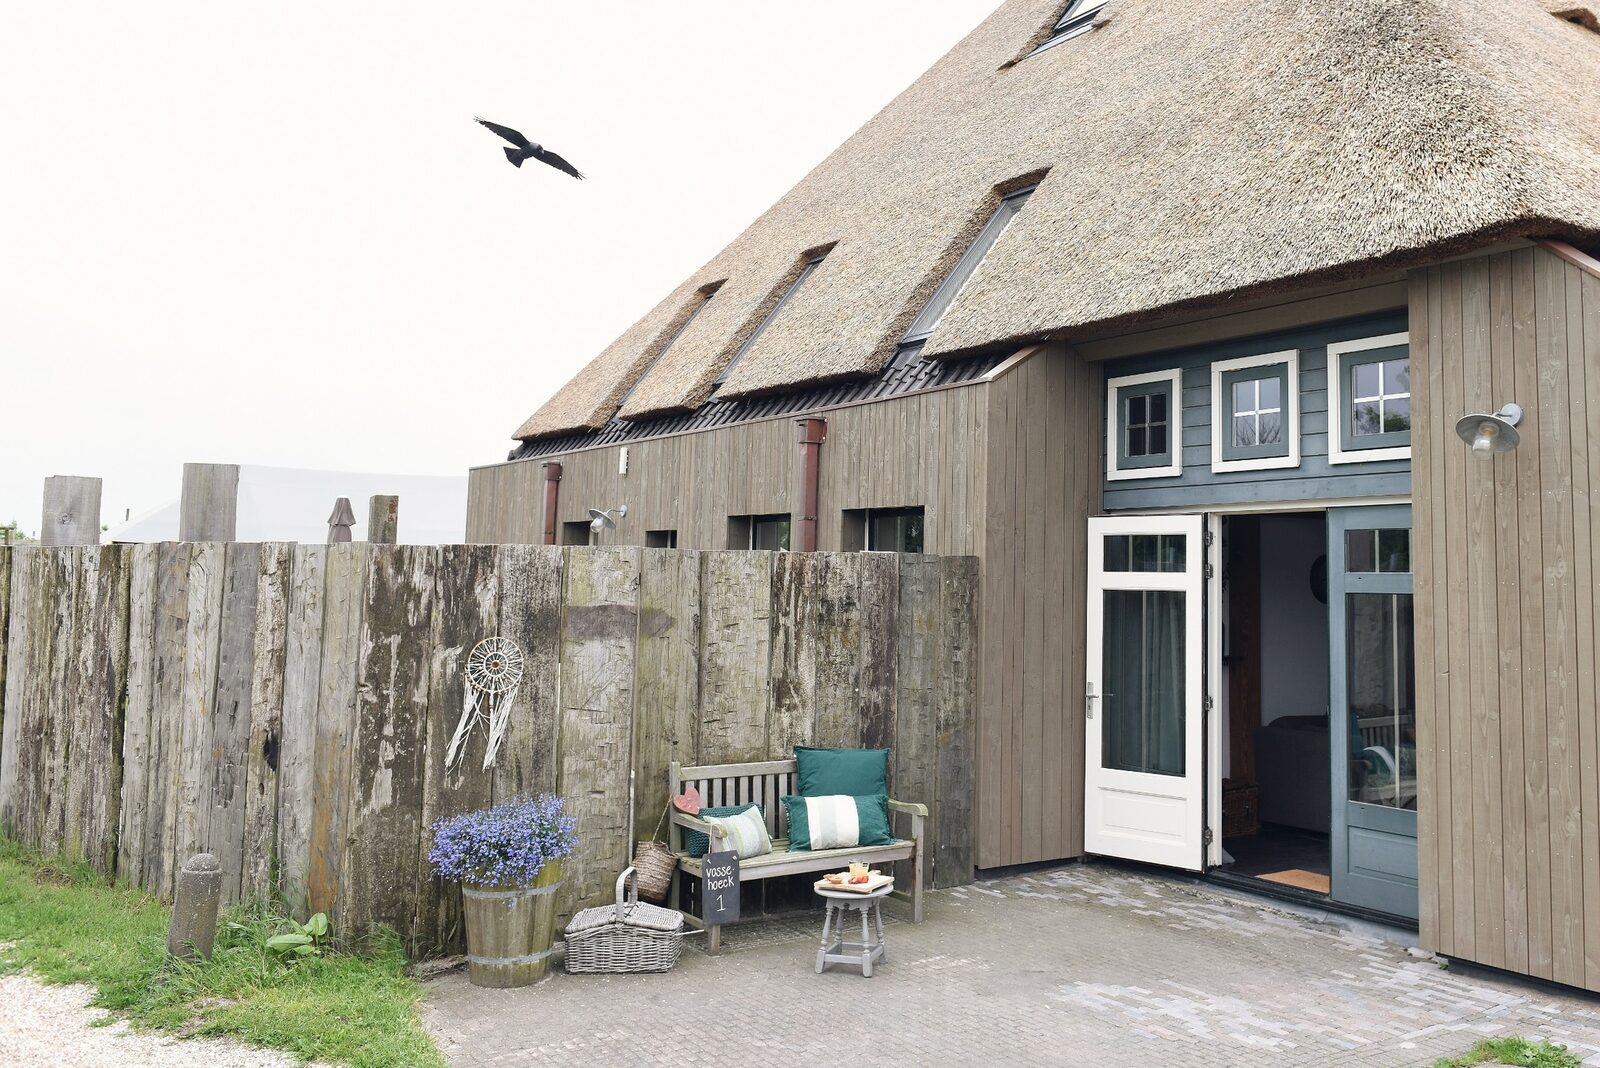 Duynhuis I vakantiehuis aan zee voor 4 personen - Nederland - Noord-Holland - Callantsoog